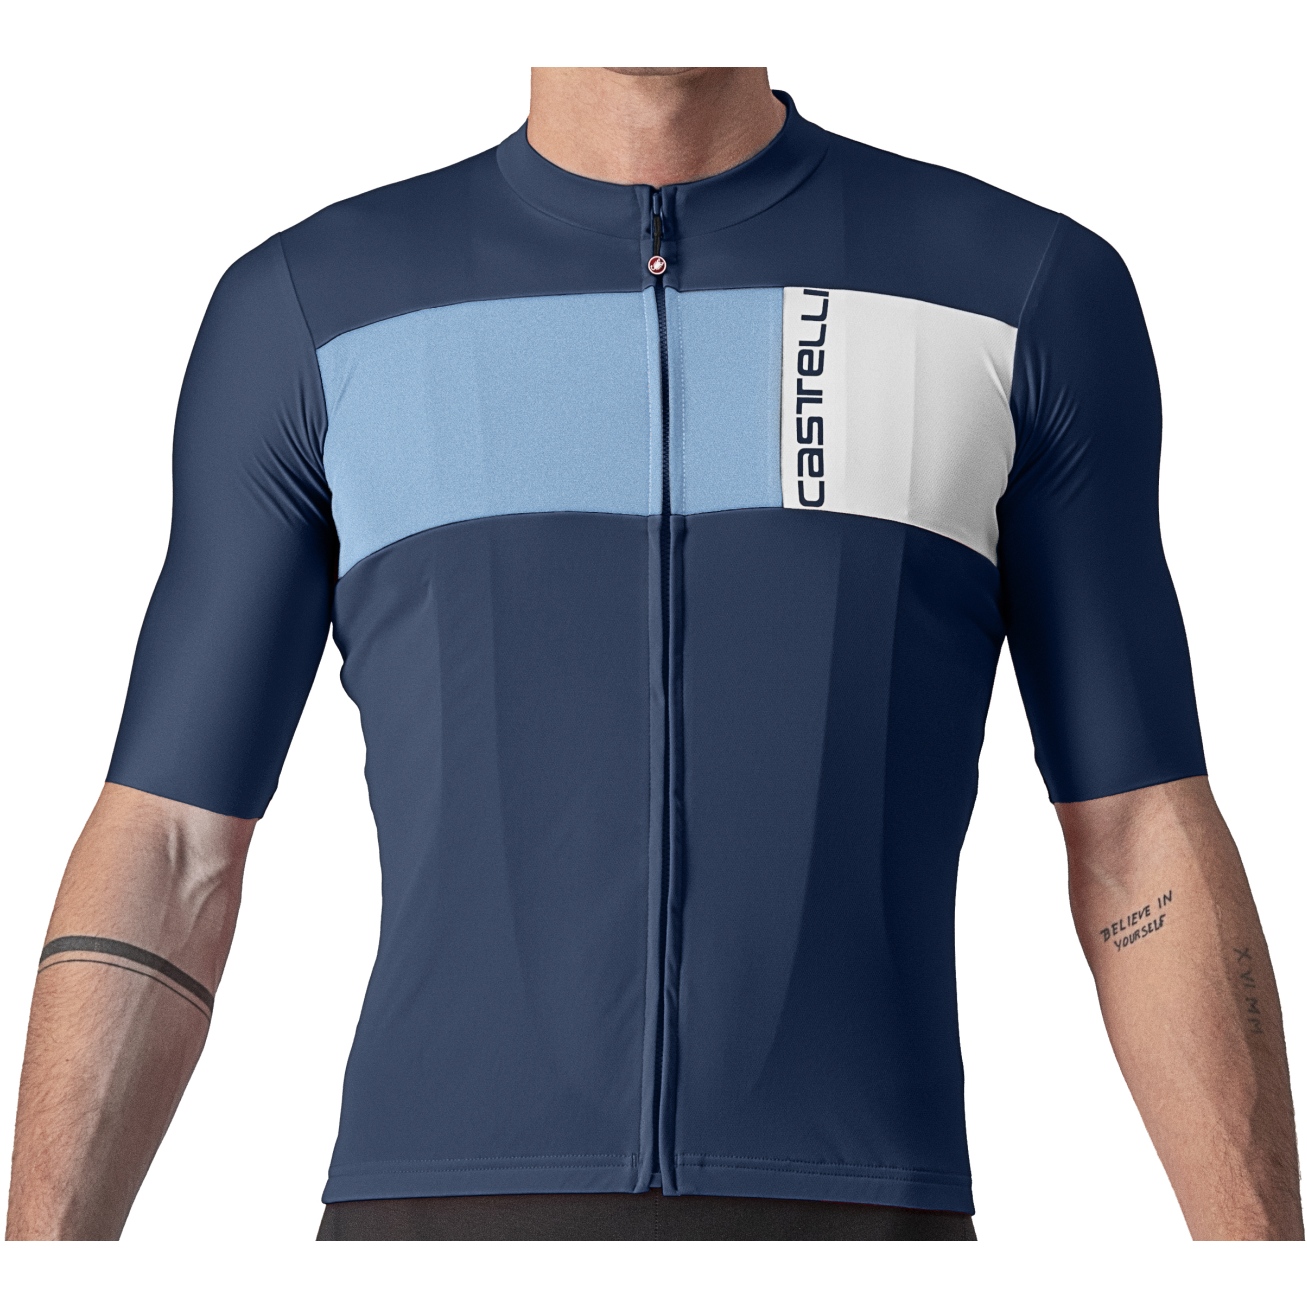 Productfoto van Castelli Prologo 7 Fietsshirt met Korte Mouwen Heren - belgian blue/drive blue-silver grey 424